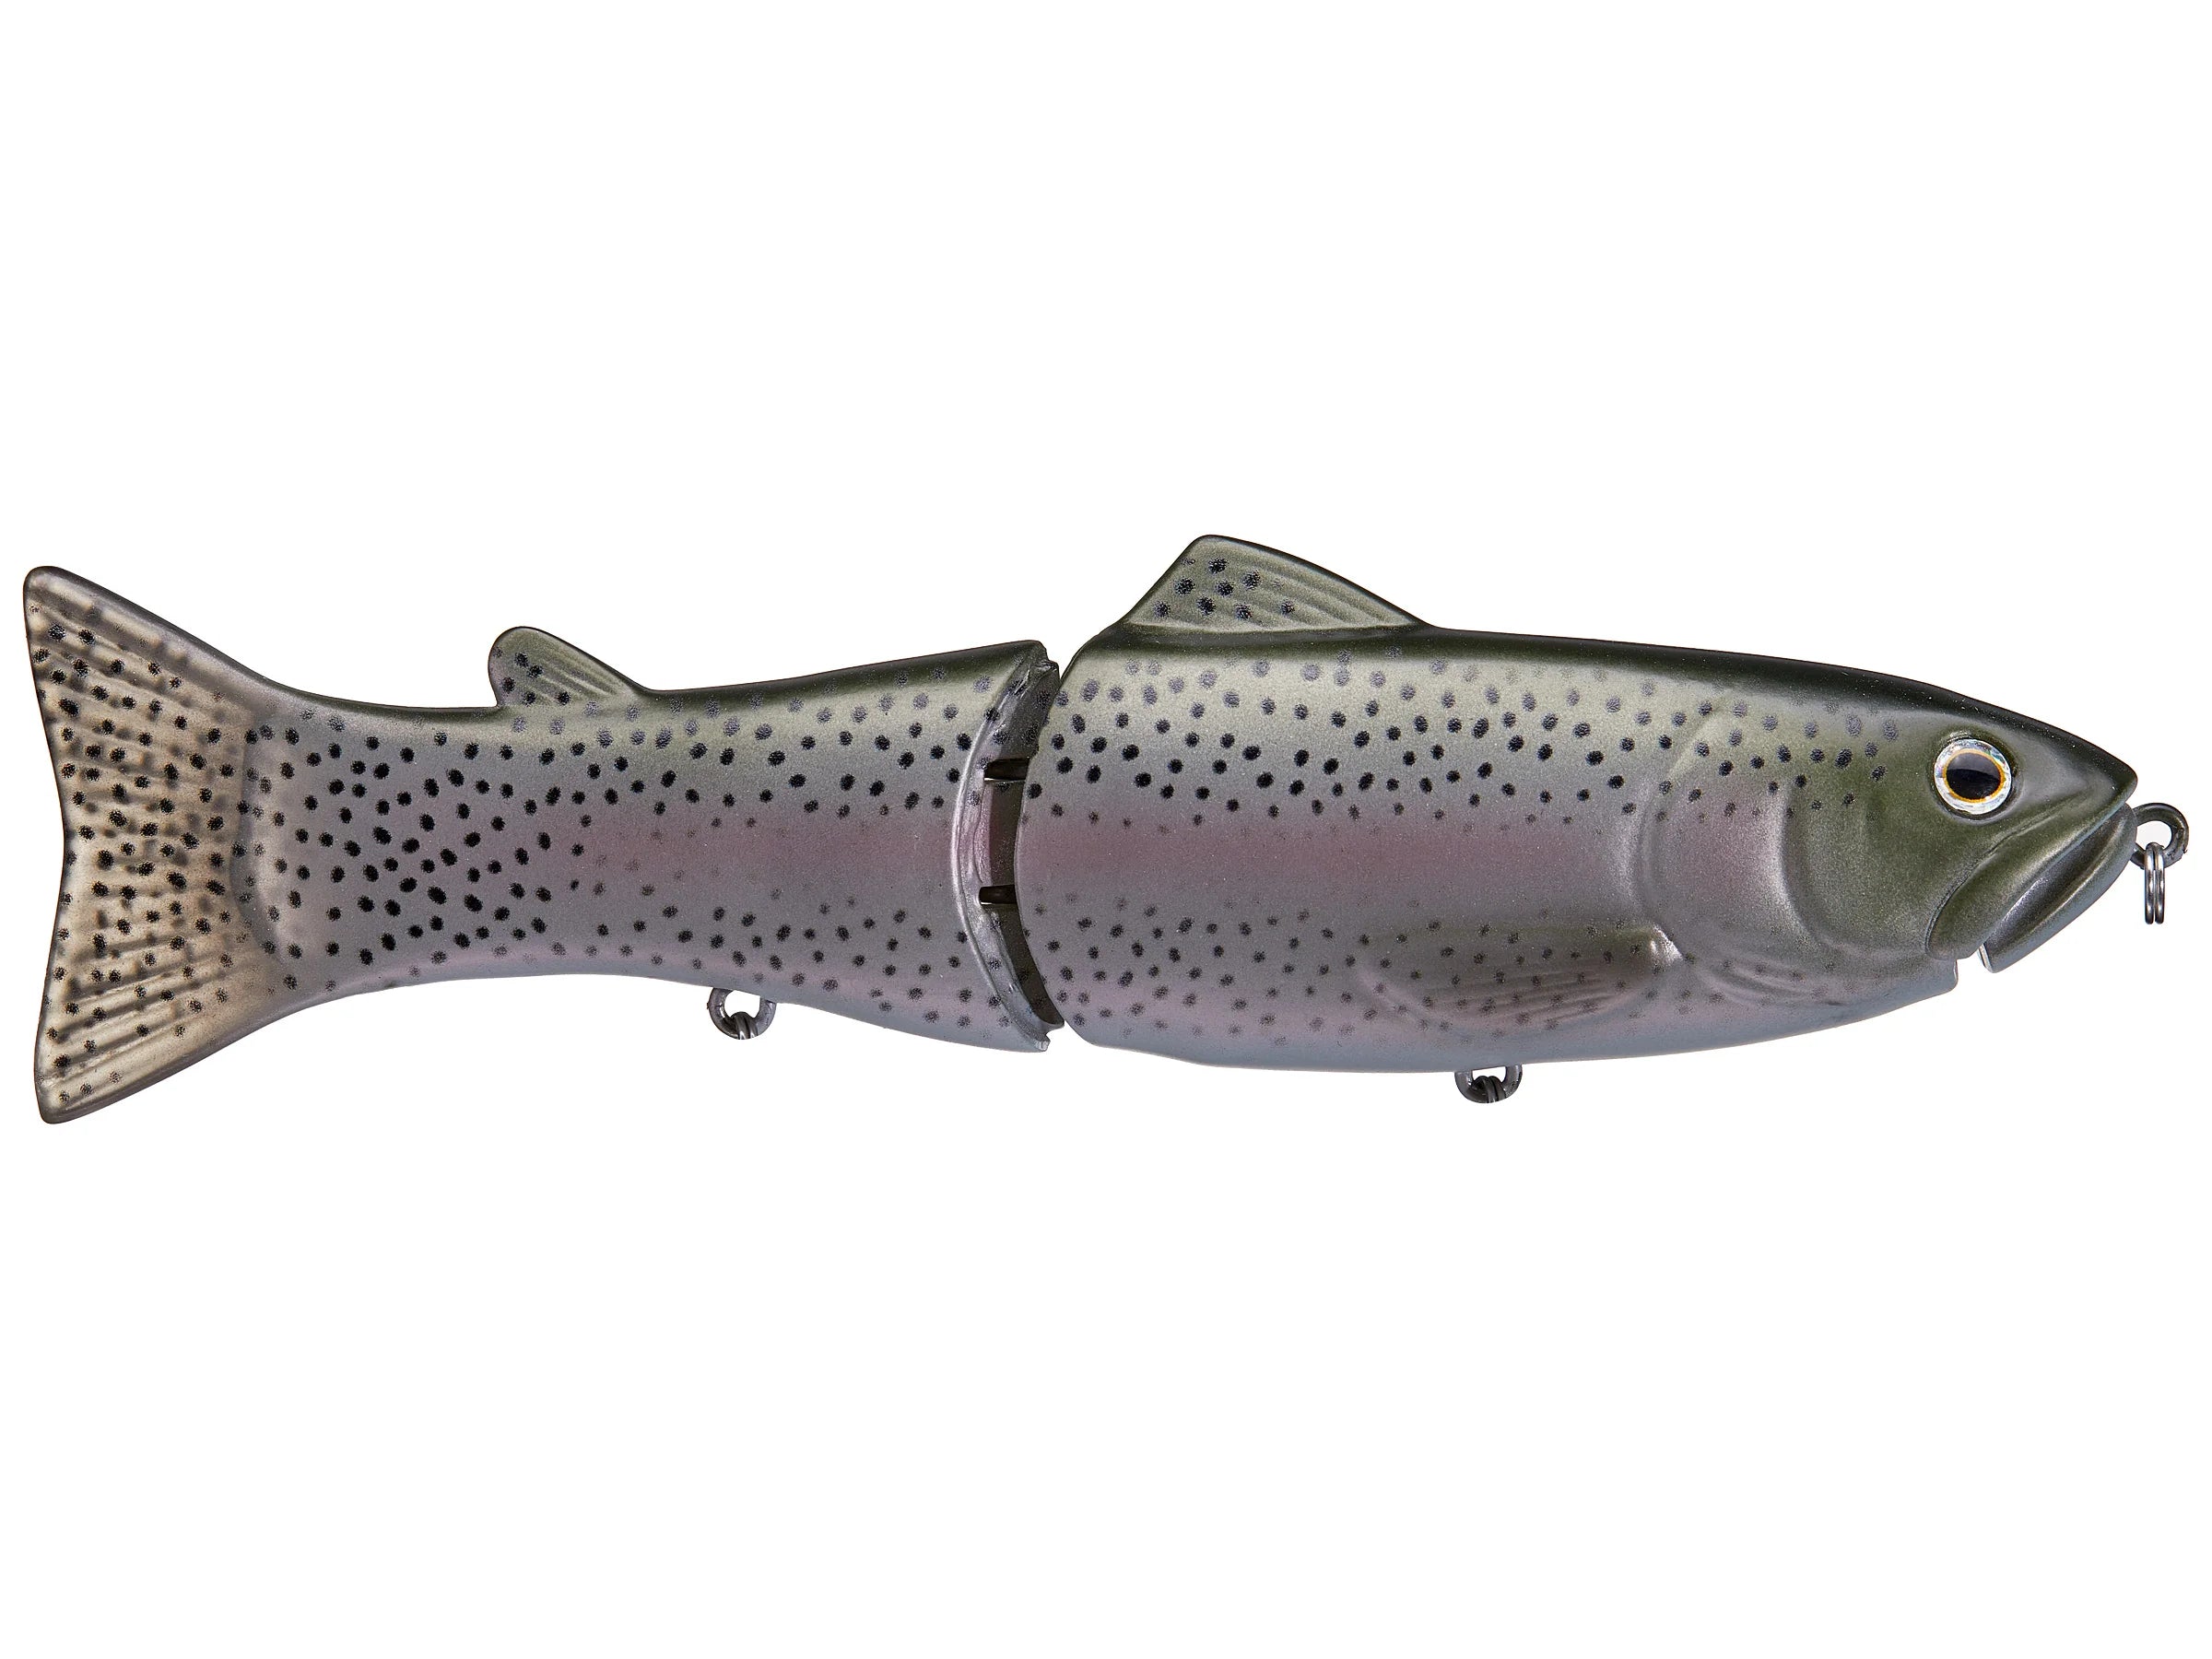 Buy 06-butch-brown-natural-trout DEPS SLIDE SWIMMER GLIDE BAIT-175